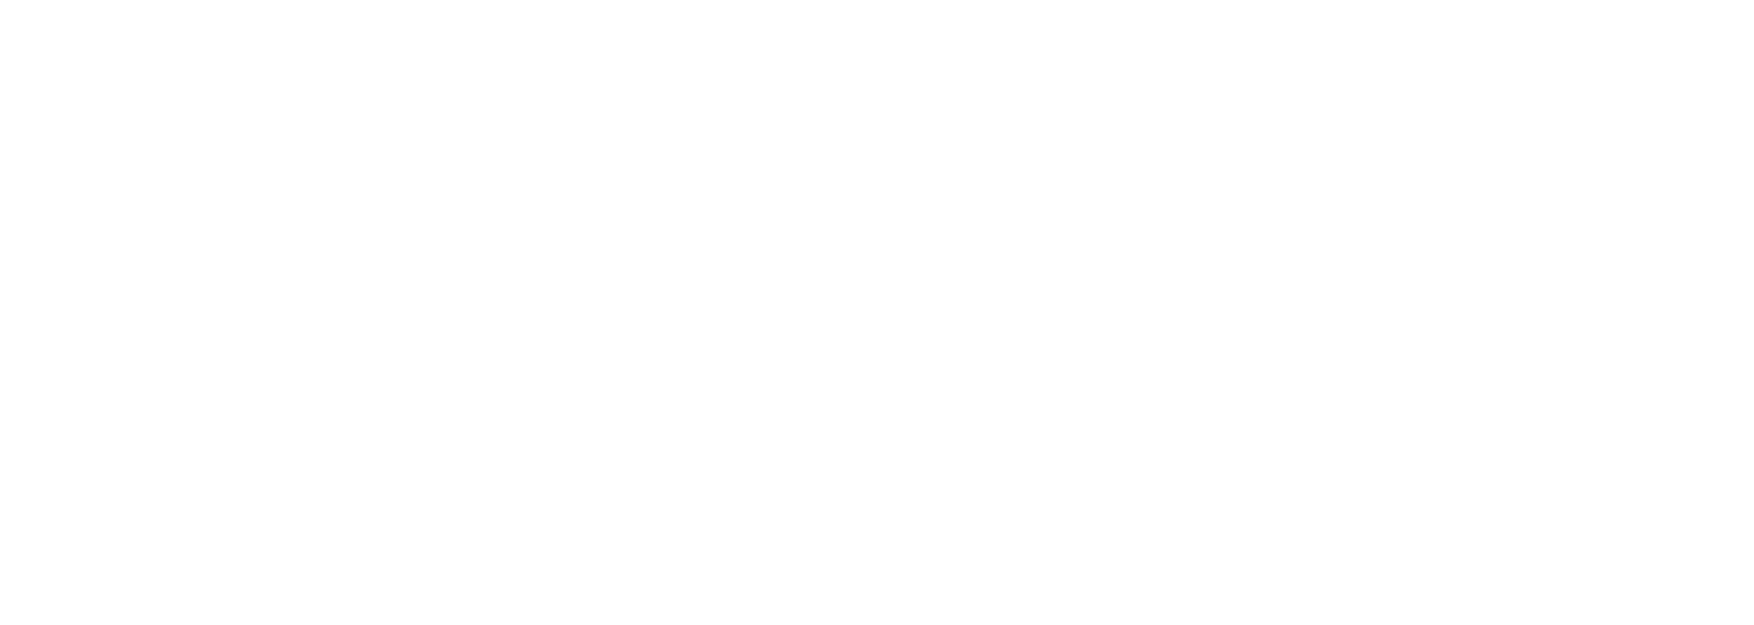 Chatelais Le Gall, mécanique marine